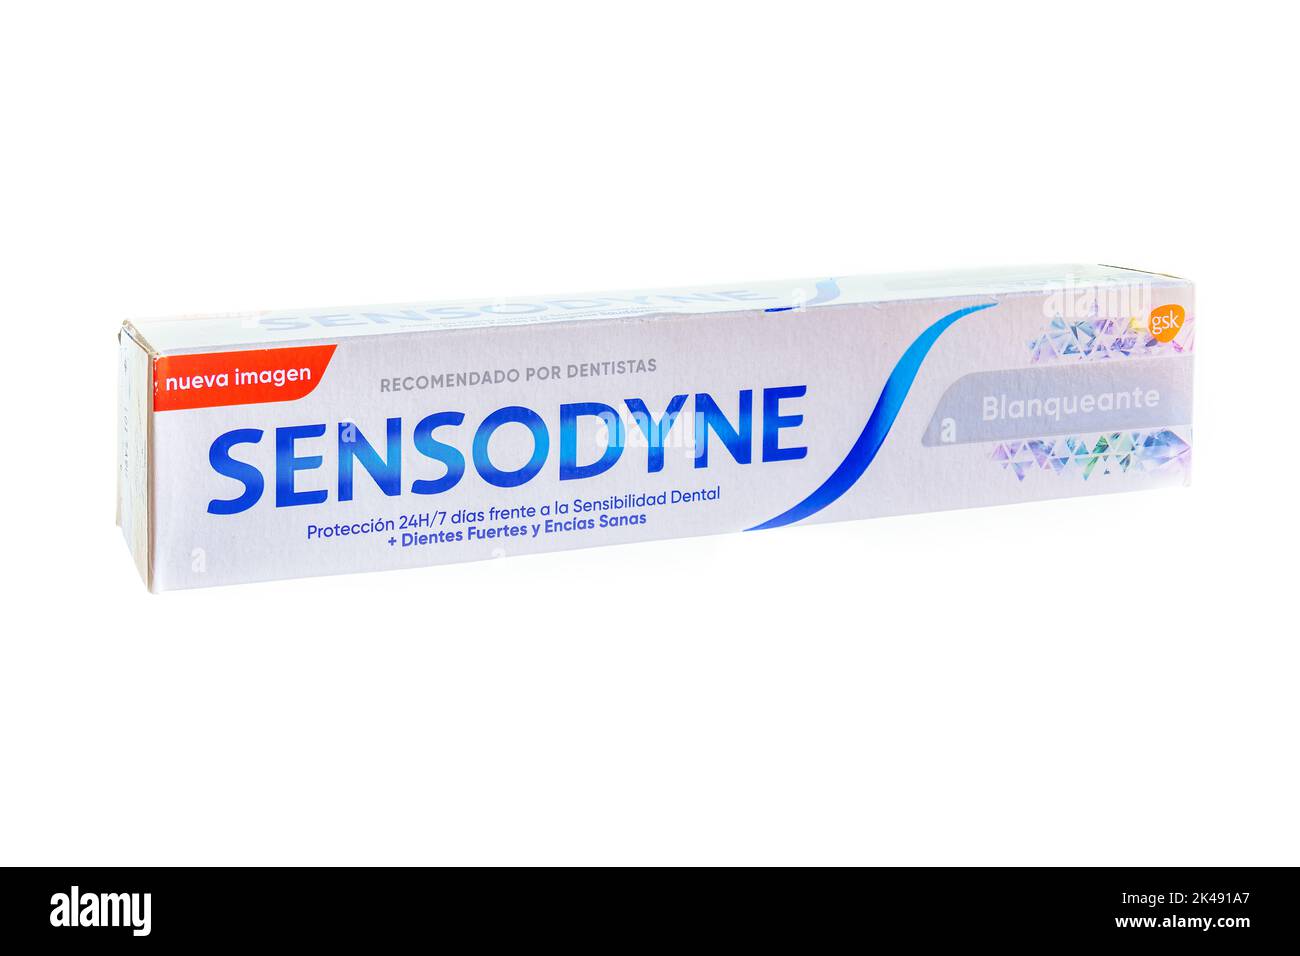 Huelva, Spain - October 1, 2022: Sensodyne whitening toothpaste, Sensodyne is a brand of toothpaste and toothbrush specialized in dental hypersensitiv Stock Photo